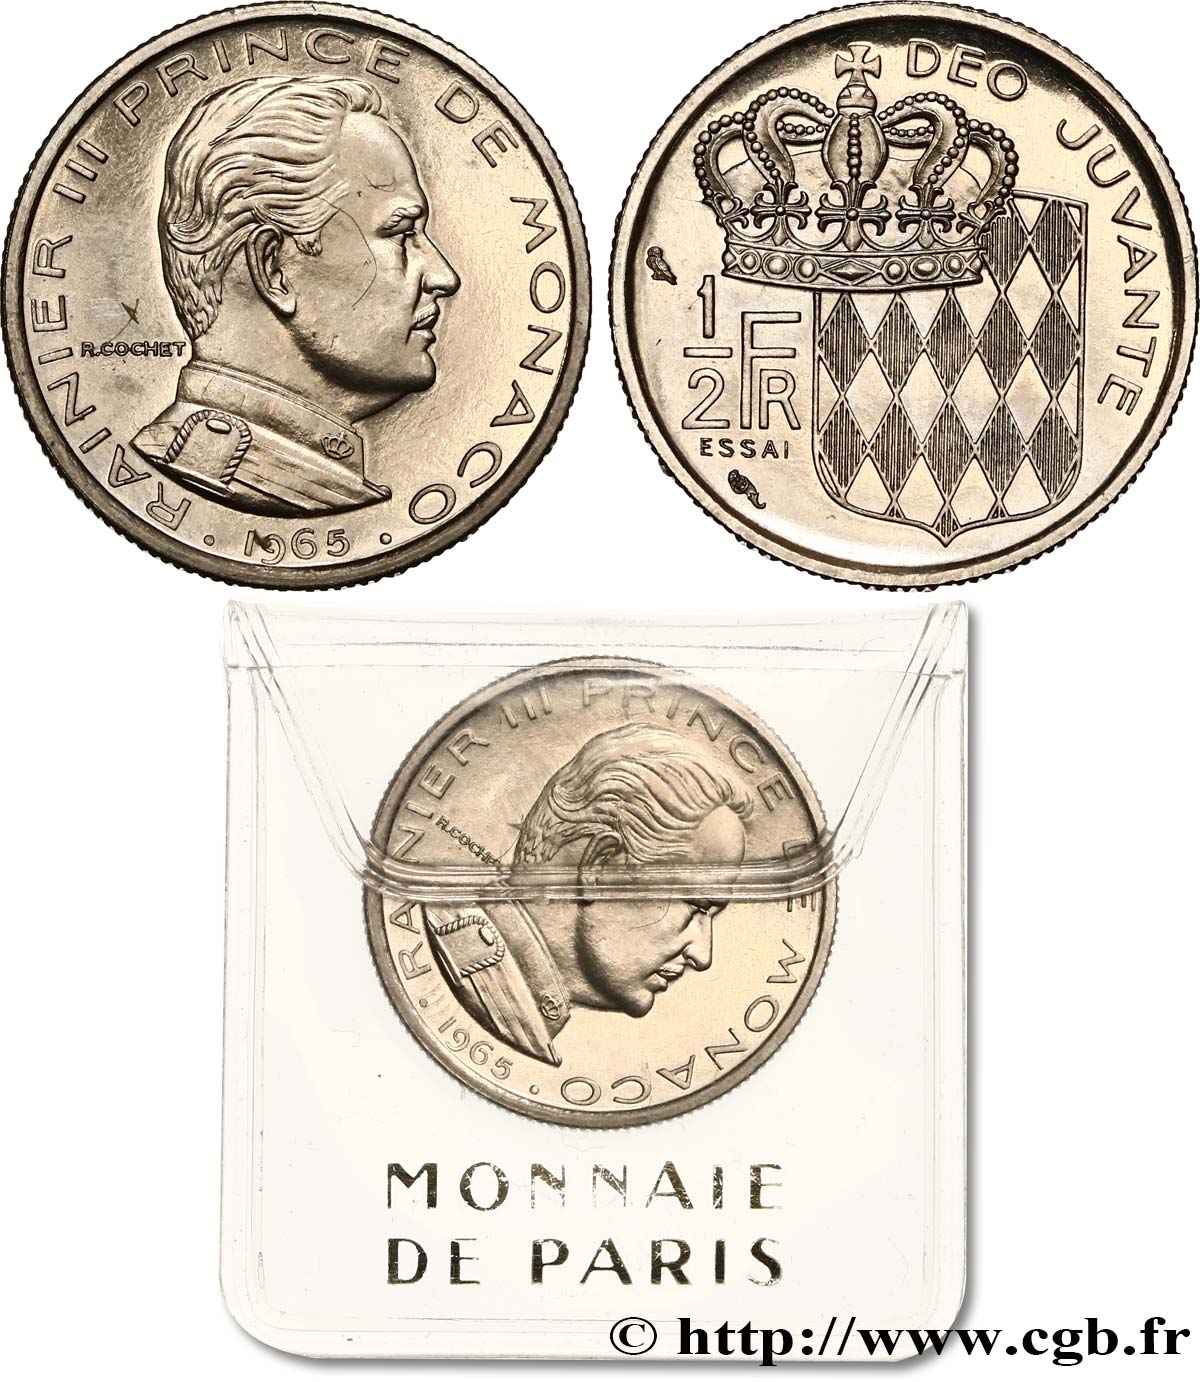 MONACO - PRINCIPALITY OF MONACO - RAINIER III Essai de 1/2 Franc 1965 Paris MS 